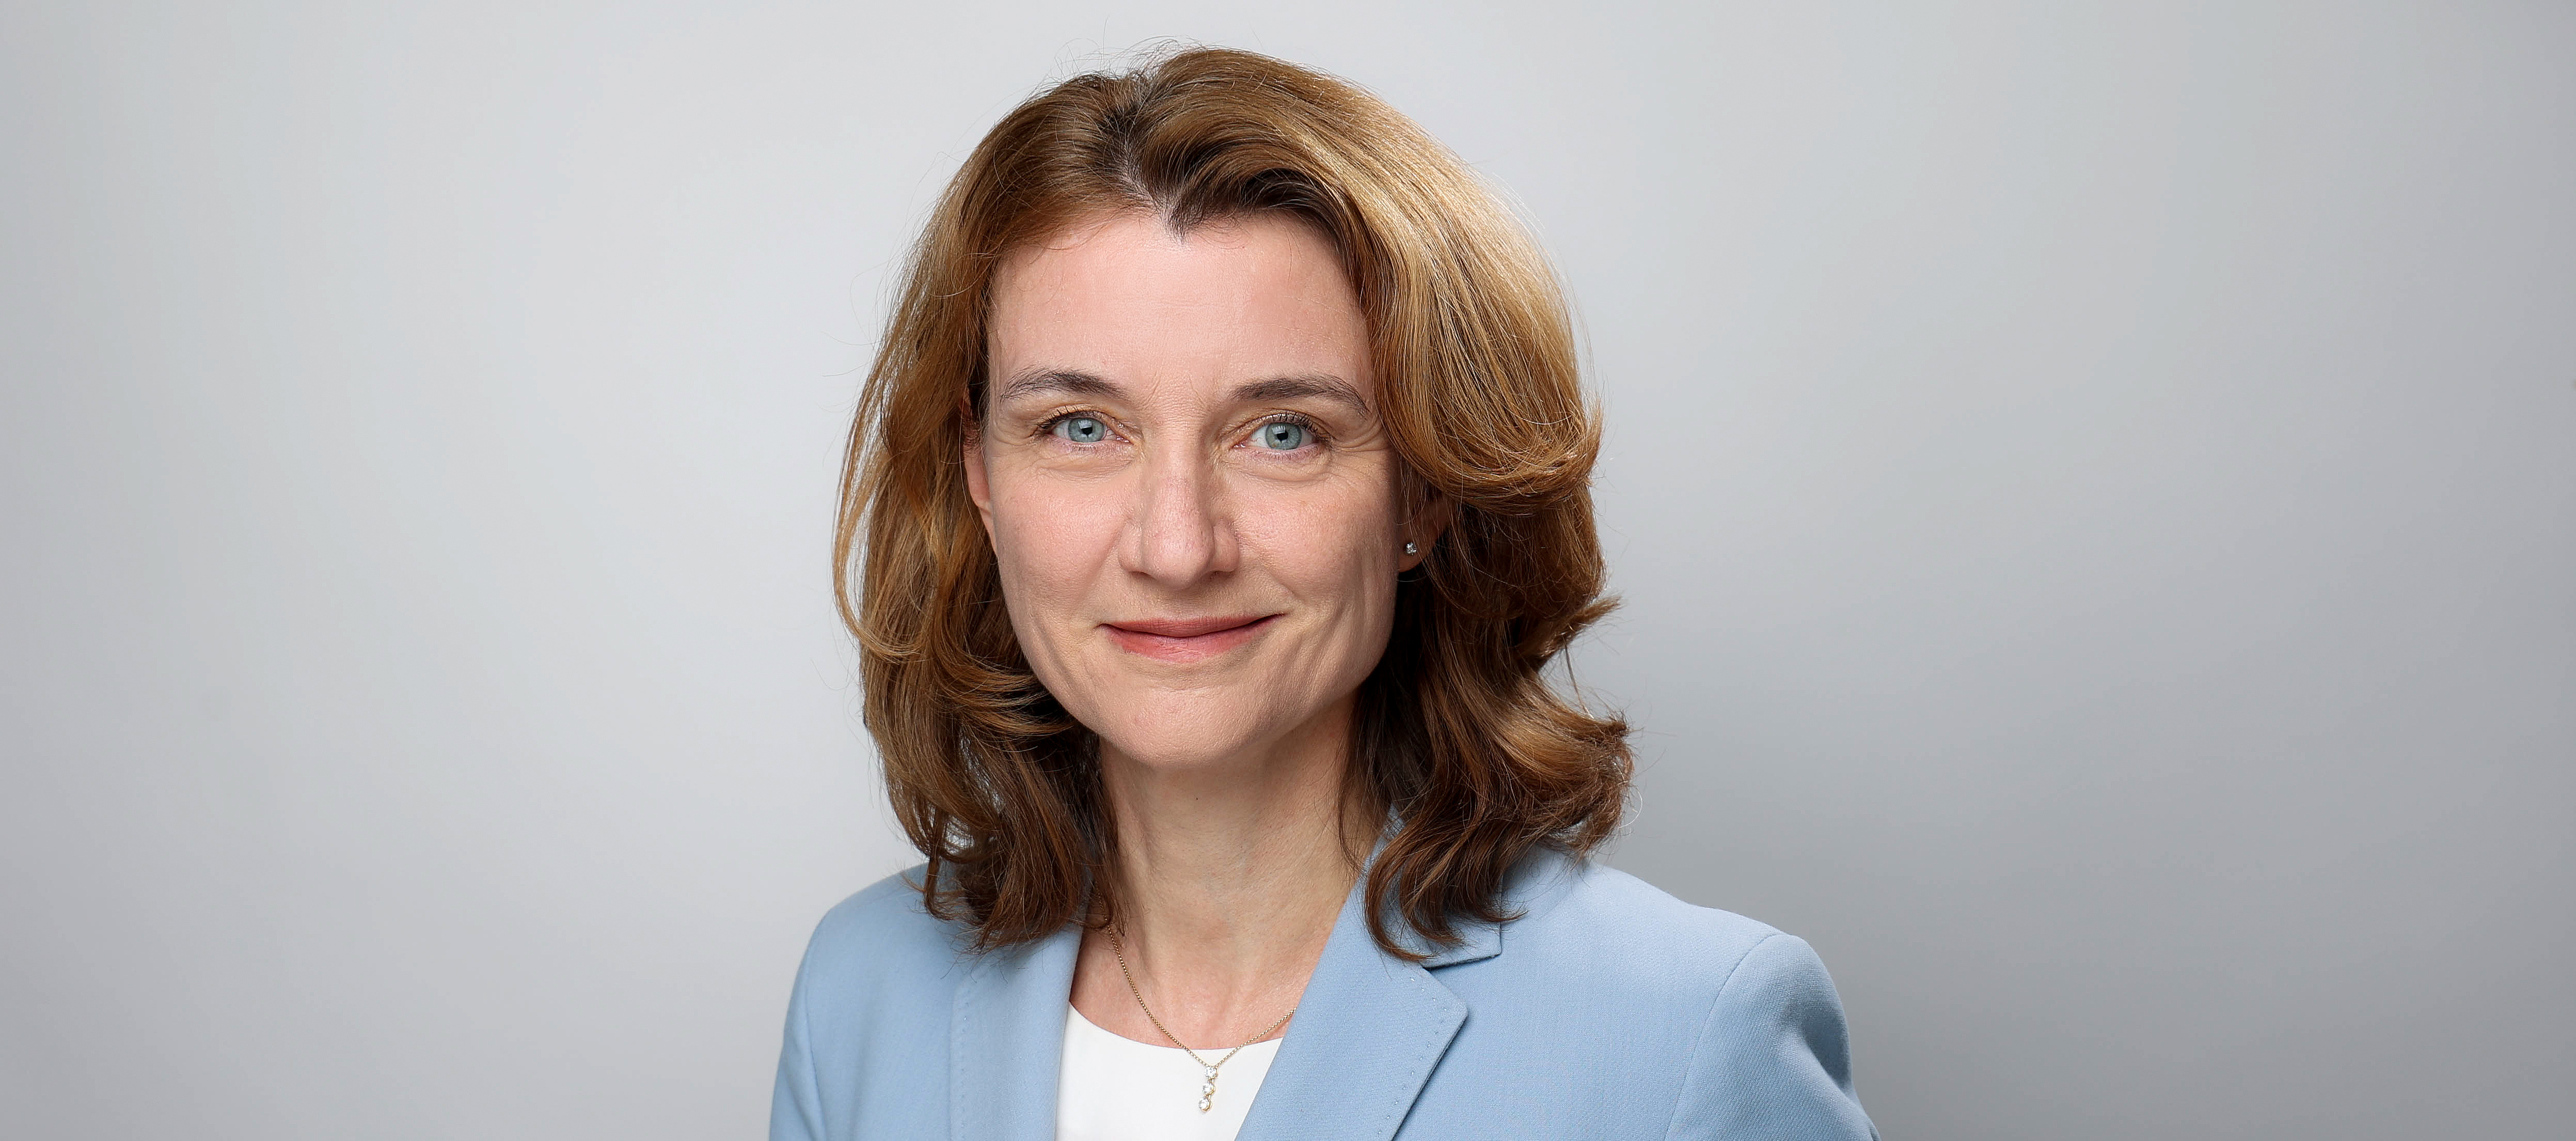 Profilbild von Prof. Dr. Daniela Schwarzer vor einem hellgrauen Hintergrund